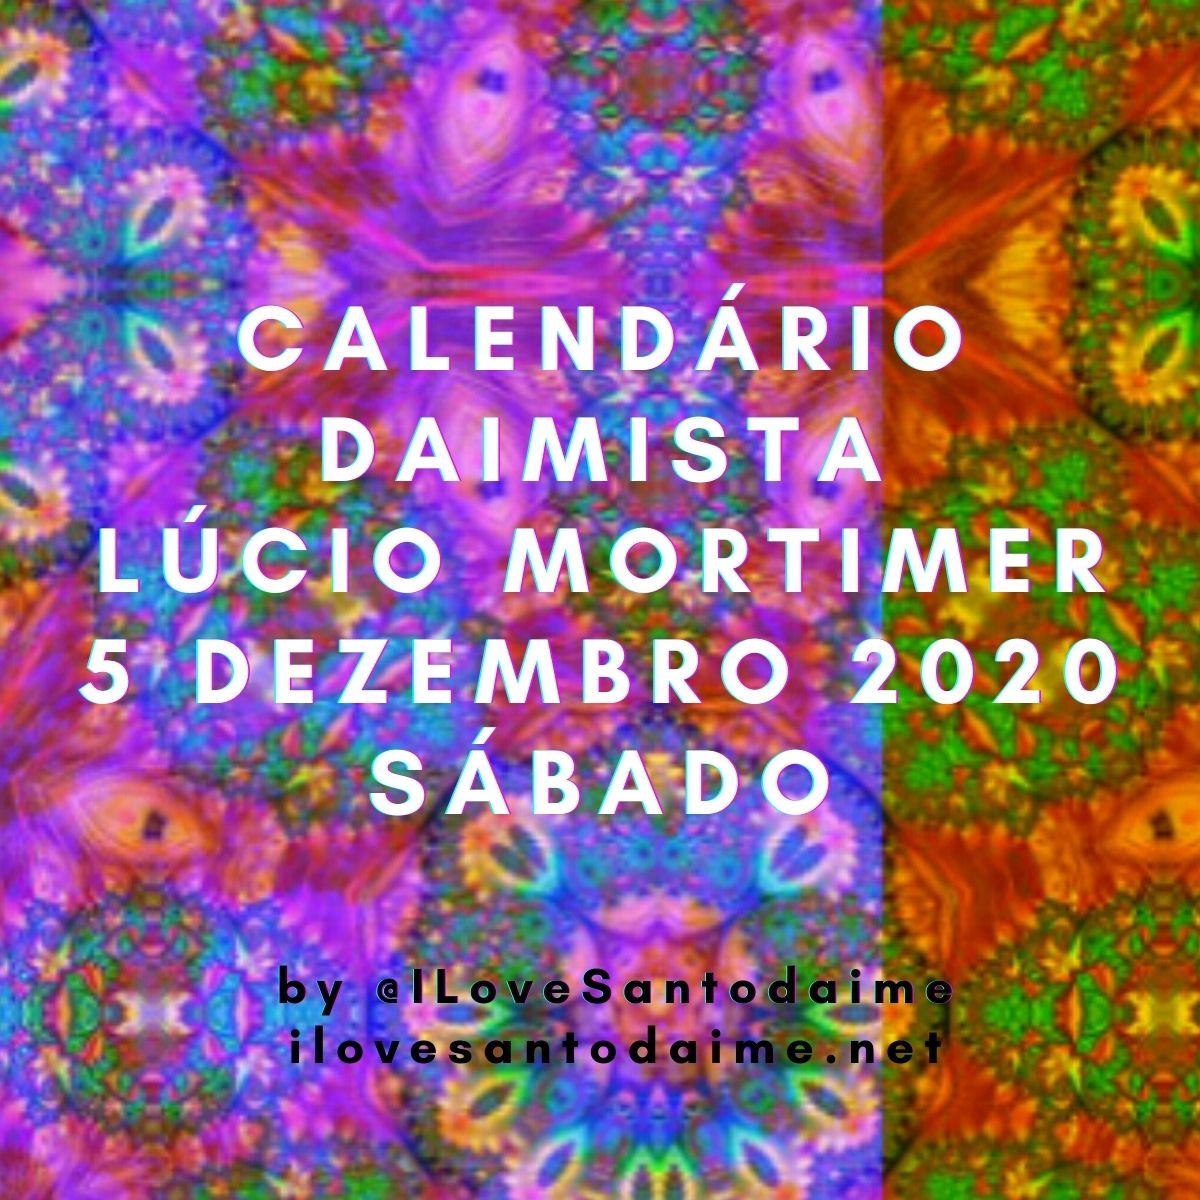 5 dezembro 2020 calendário daimista Lucio Mortimer